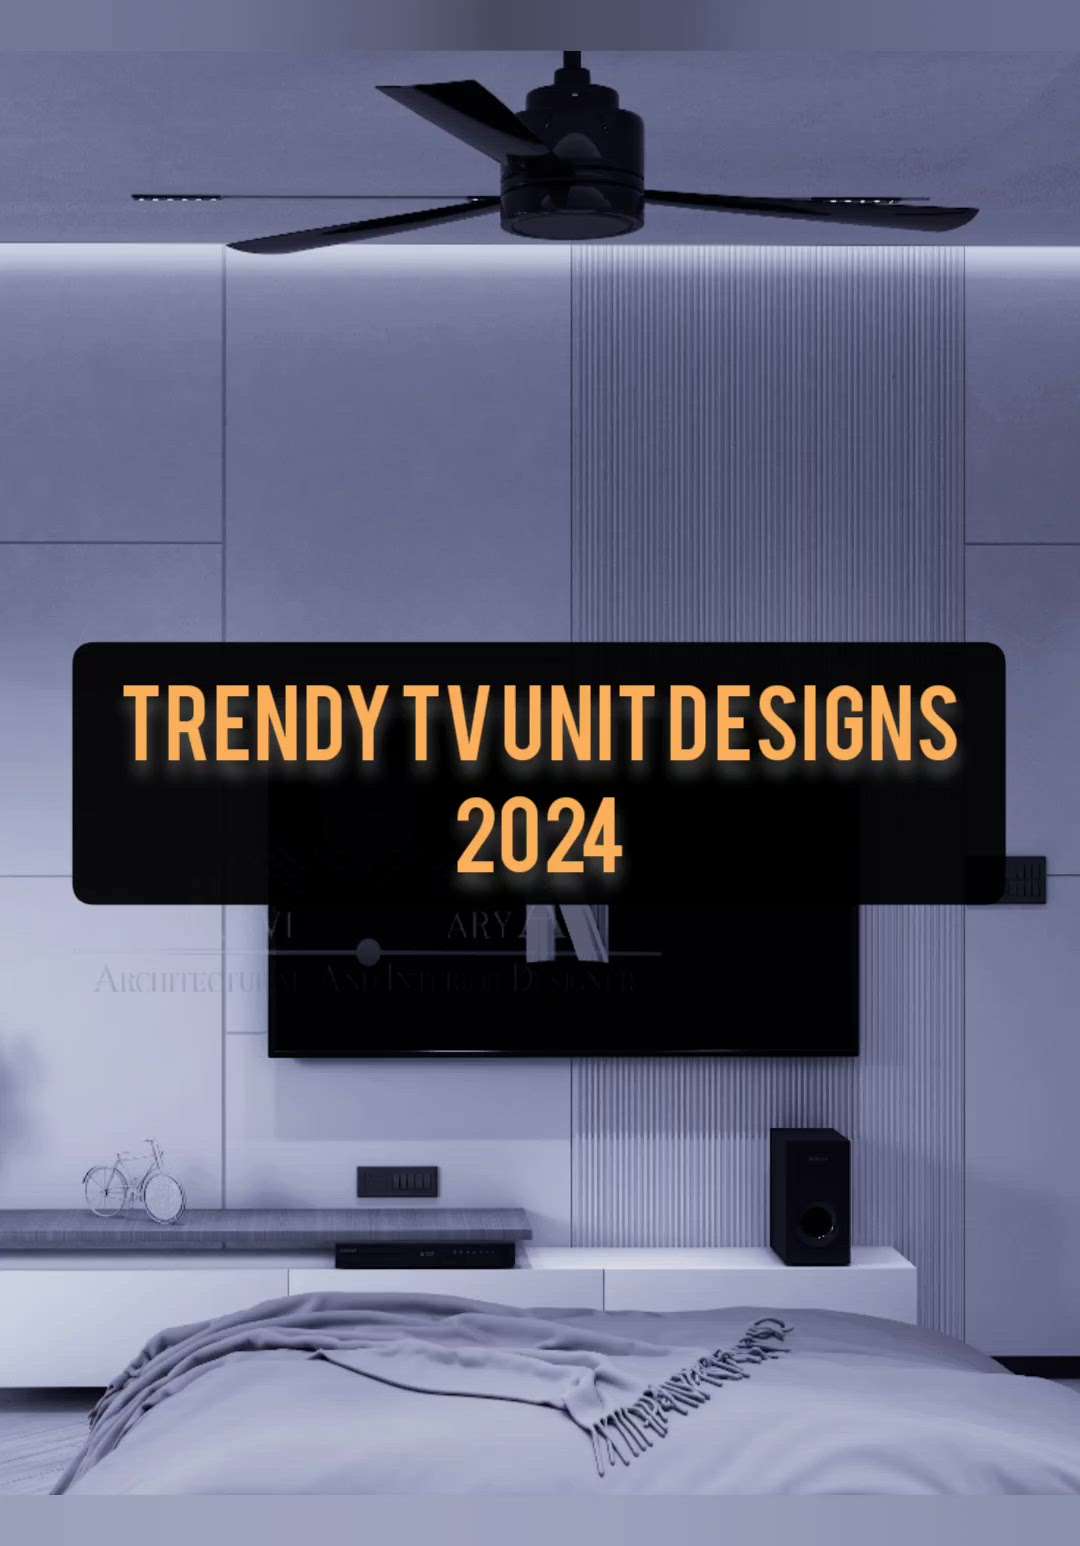 tv unit design trends!
#TVStand #LivingRoomTV #tvcabinet #tvunits #tvbackpaneling #tvunitdesign #